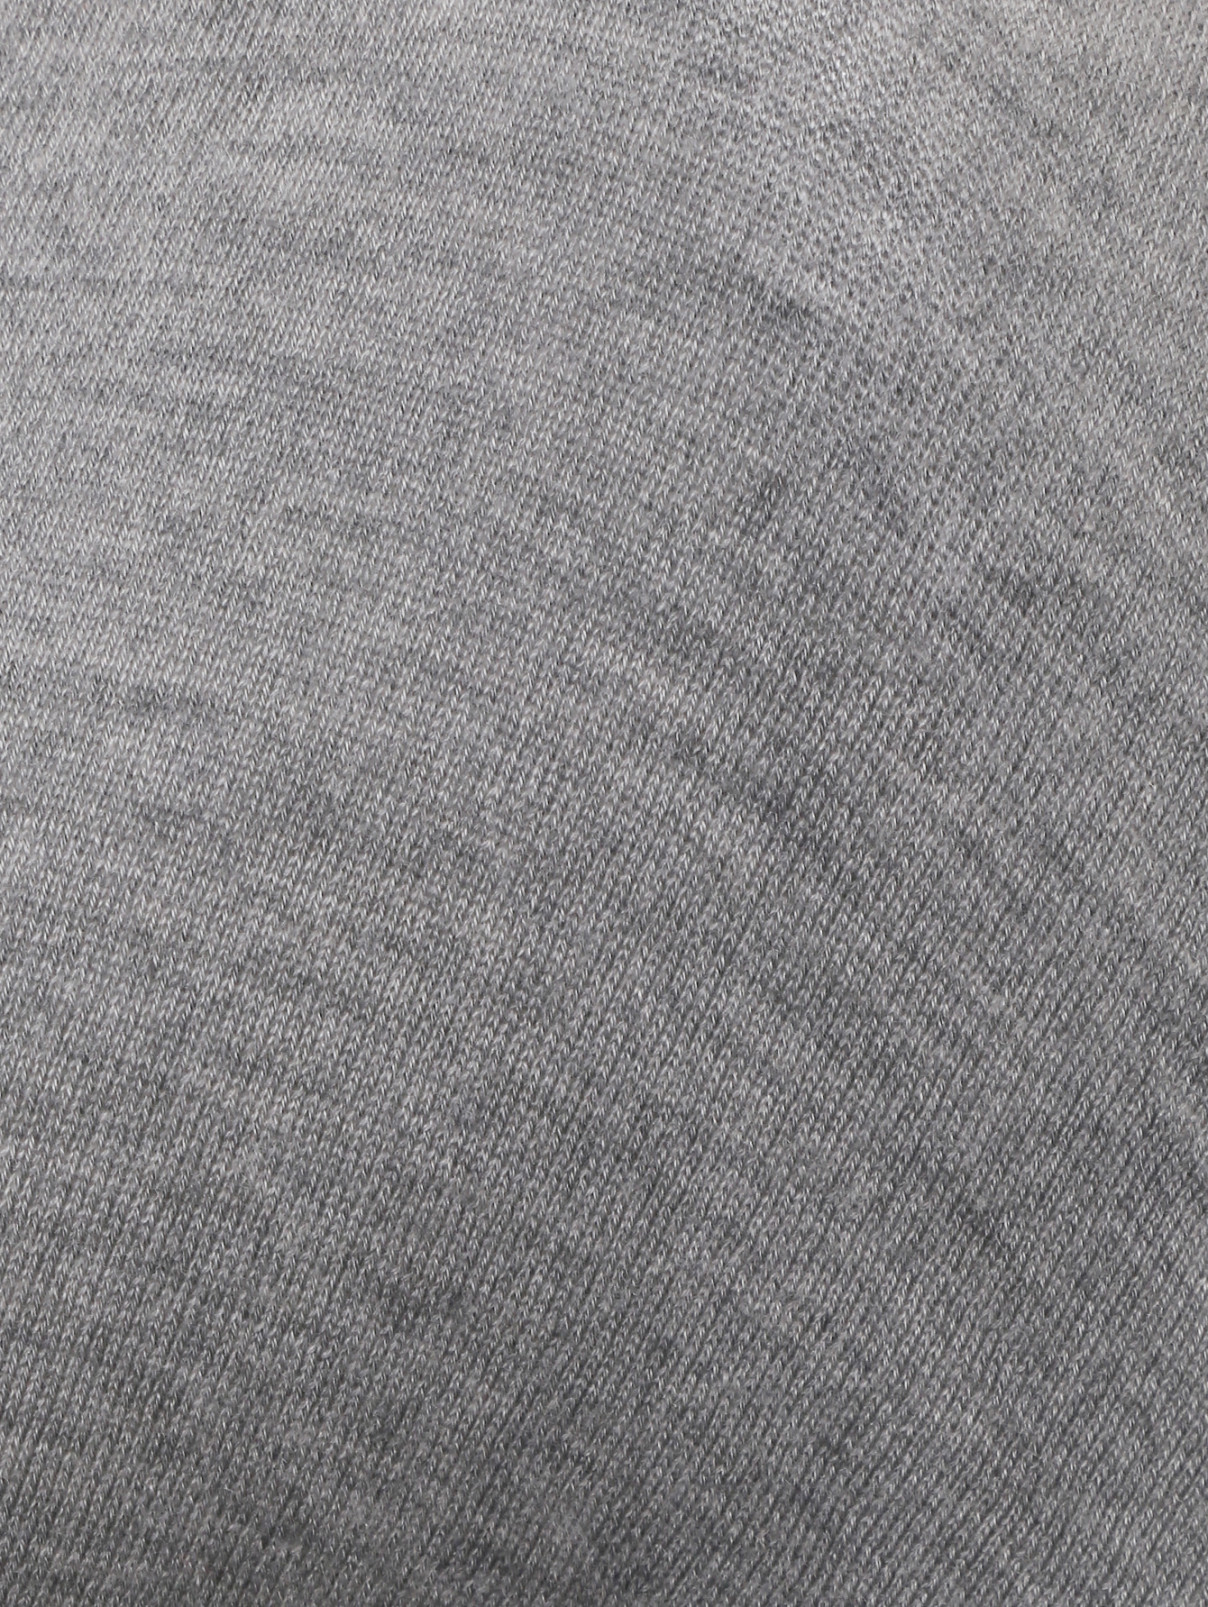 Удлиненный джемпер из кашемира и шерсти Equipment  –  Деталь  – Цвет:  Серый